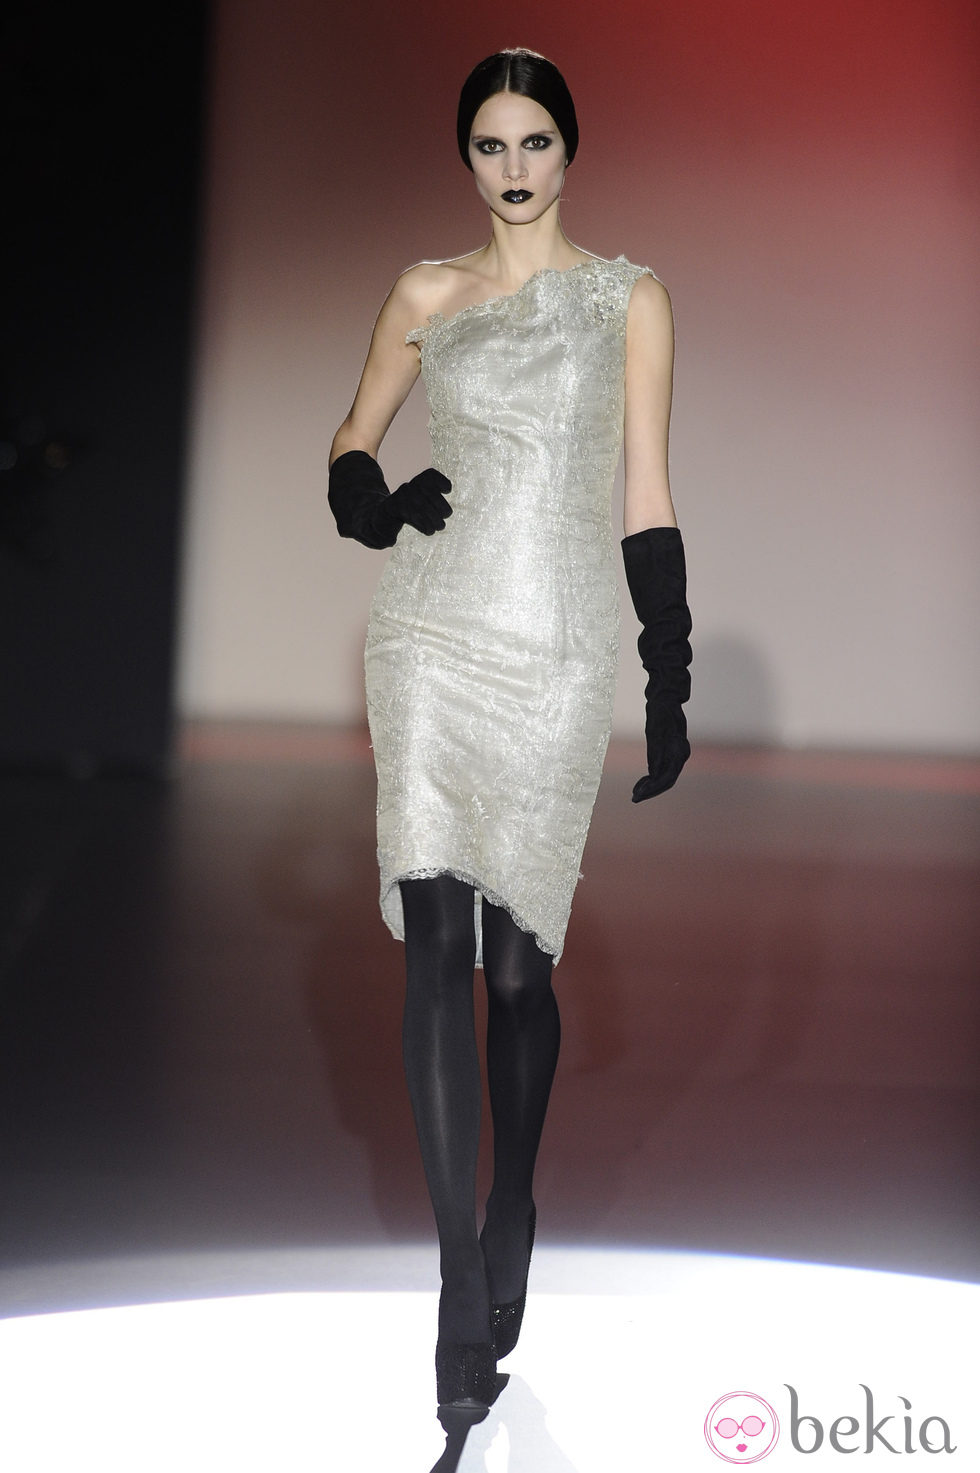 Vestido de color gris perla con guantes para la colección otoño/invierno 2013/2014 de Hannibal Laguna en la Madrid Fashion Week